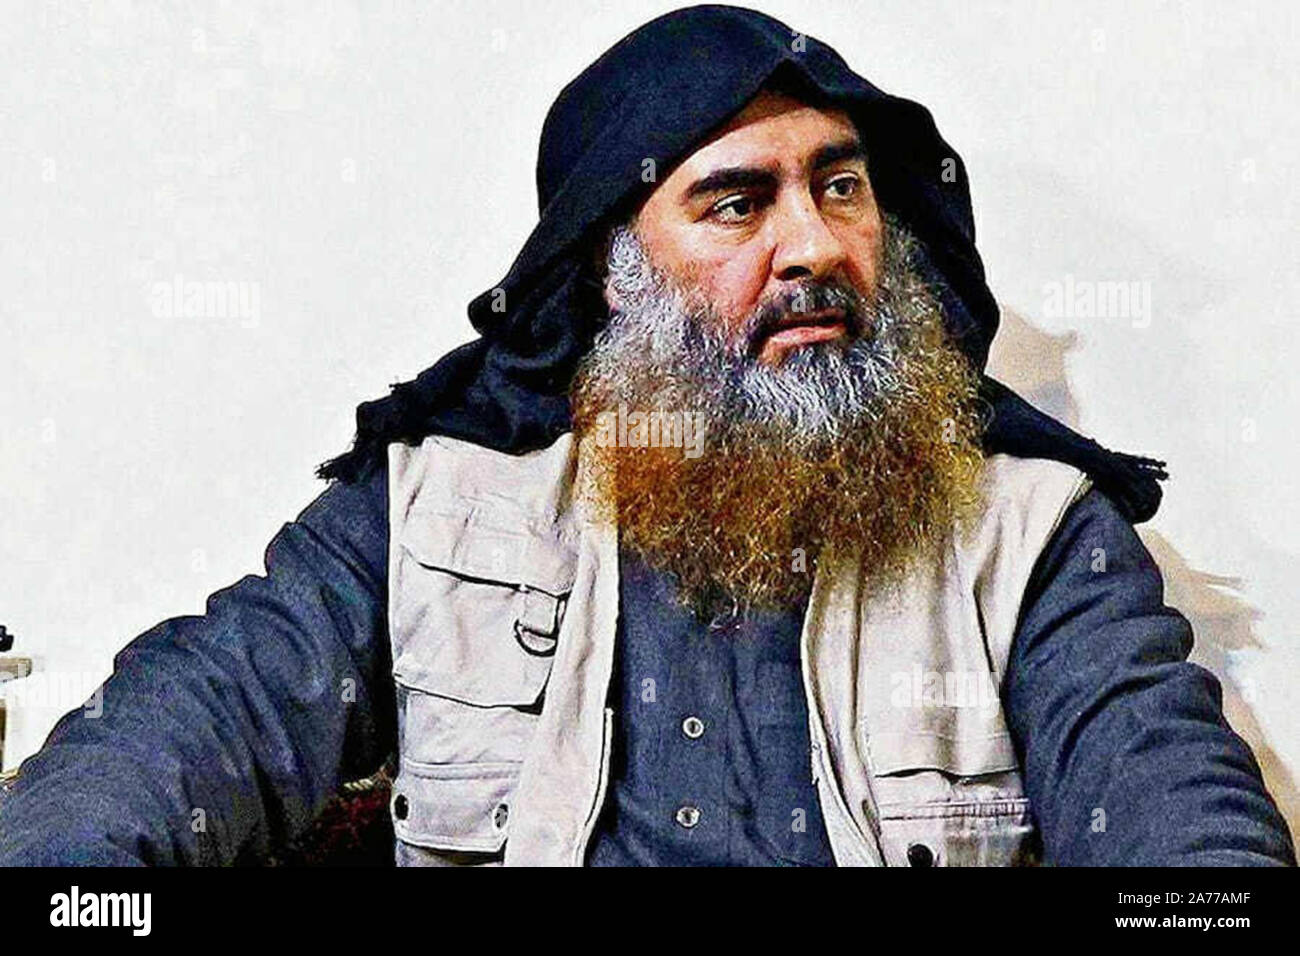 Washington, Stati Uniti. 30 ott 2019. File foto di Abu Bakr al-Baghdadi, leader dello Stato islamico dell Iraq e il levante (ISIL). Baghdadi ucciso il 26 ottobre 2019, durante un raid da U.S. forze per le operazioni speciali sul suo composto nel nordovest della Siria. Foto per gentile concessione del Dipartimento della Difesa/UPI Credito: UPI/Alamy Live News Foto Stock